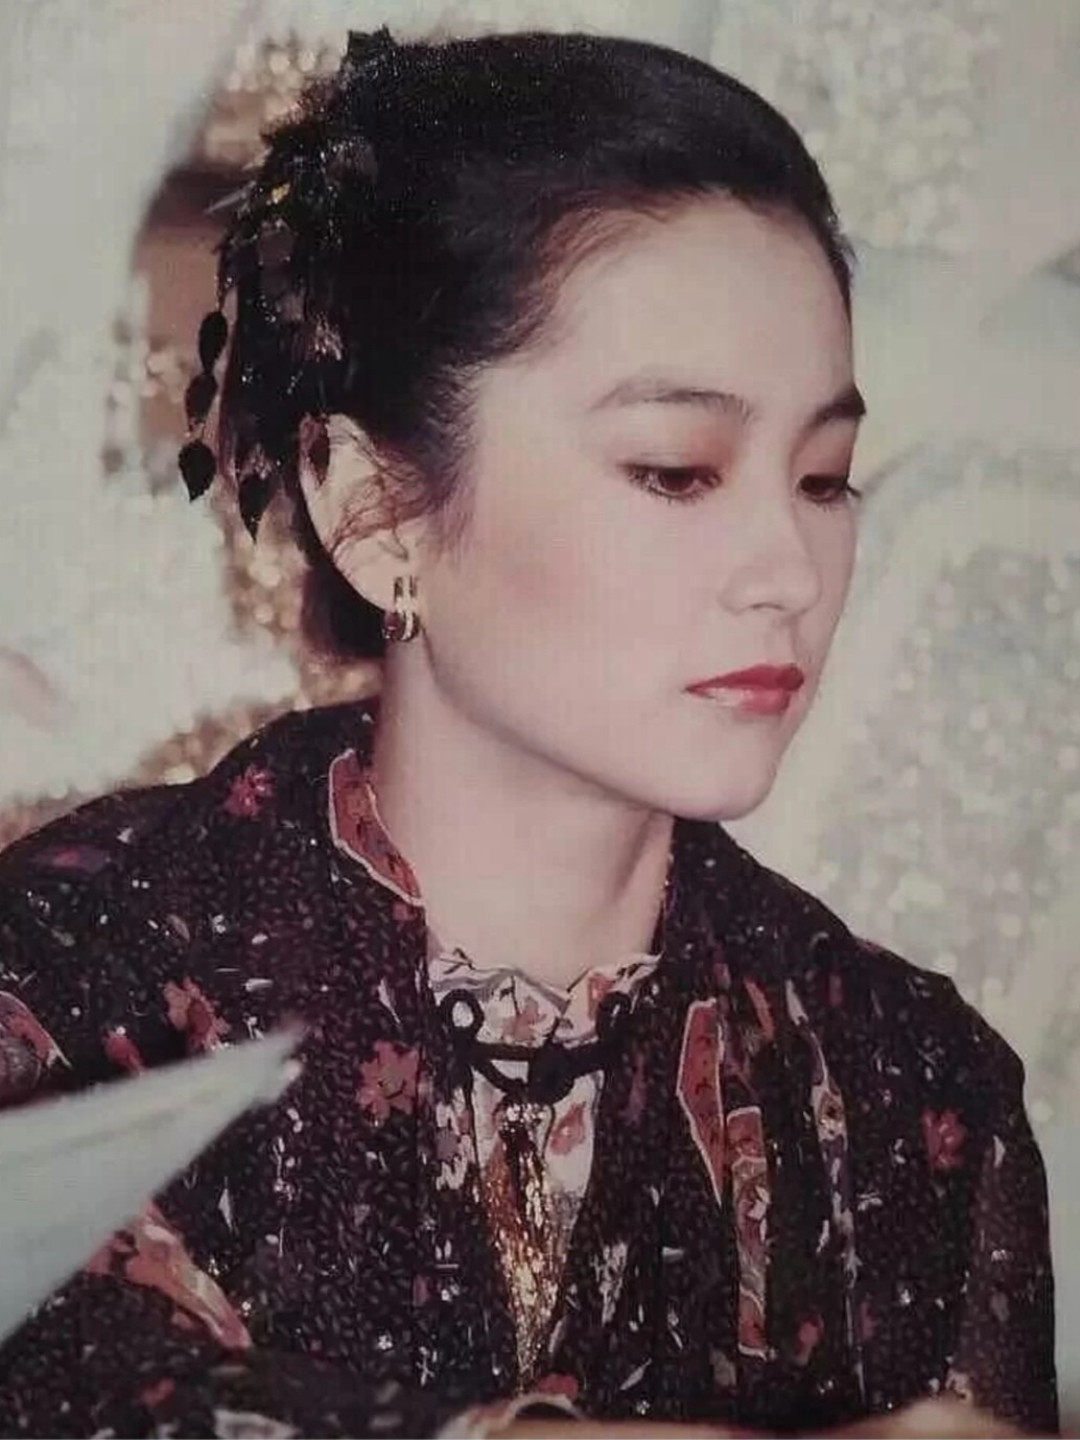 作为一代人的女神,林青霞年轻时的美貌依旧让人记忆深